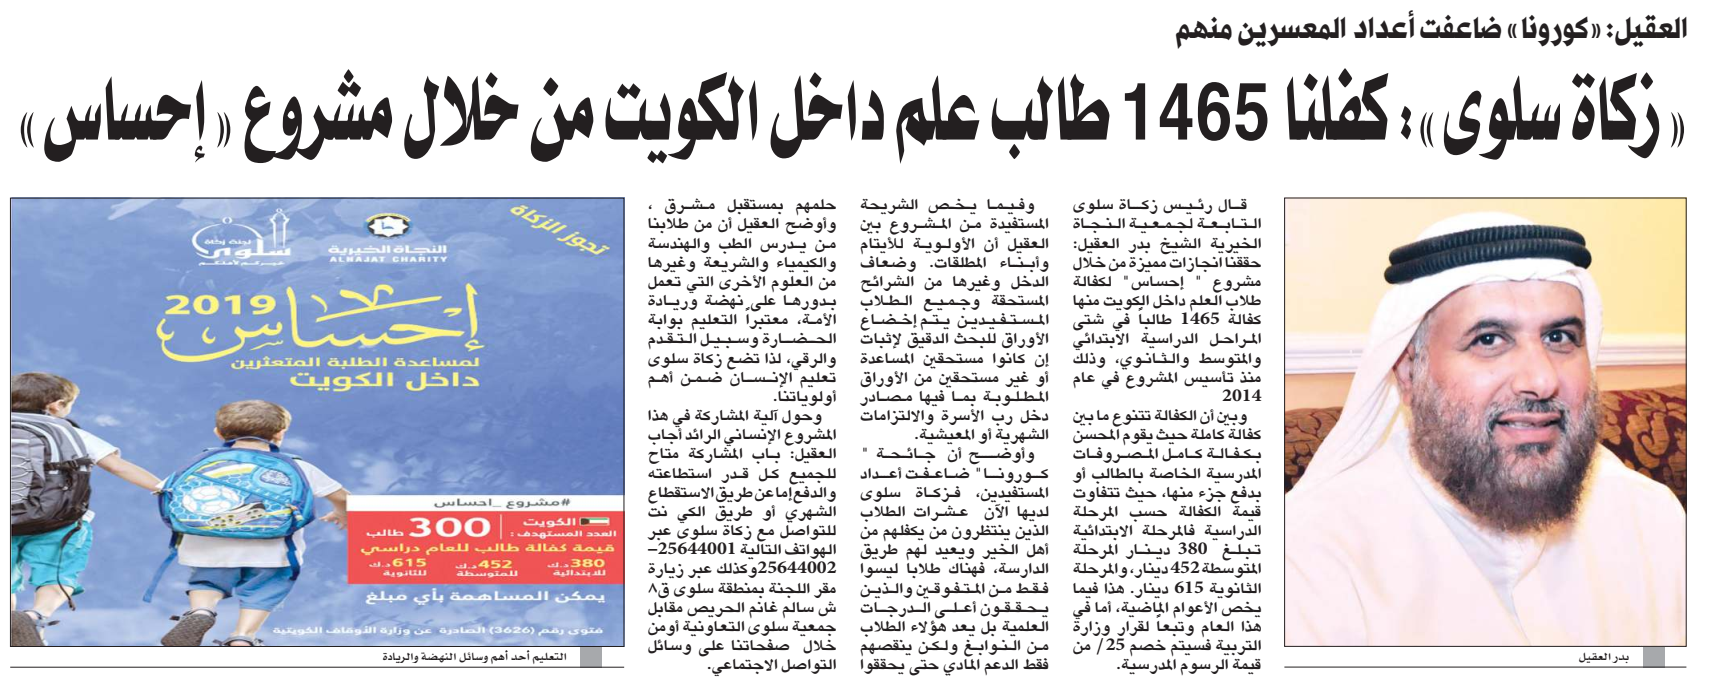 "زكاة سلوى": كفلنا 1465 طالب علم داخل الكويت من خلال مشروع " إحساس"